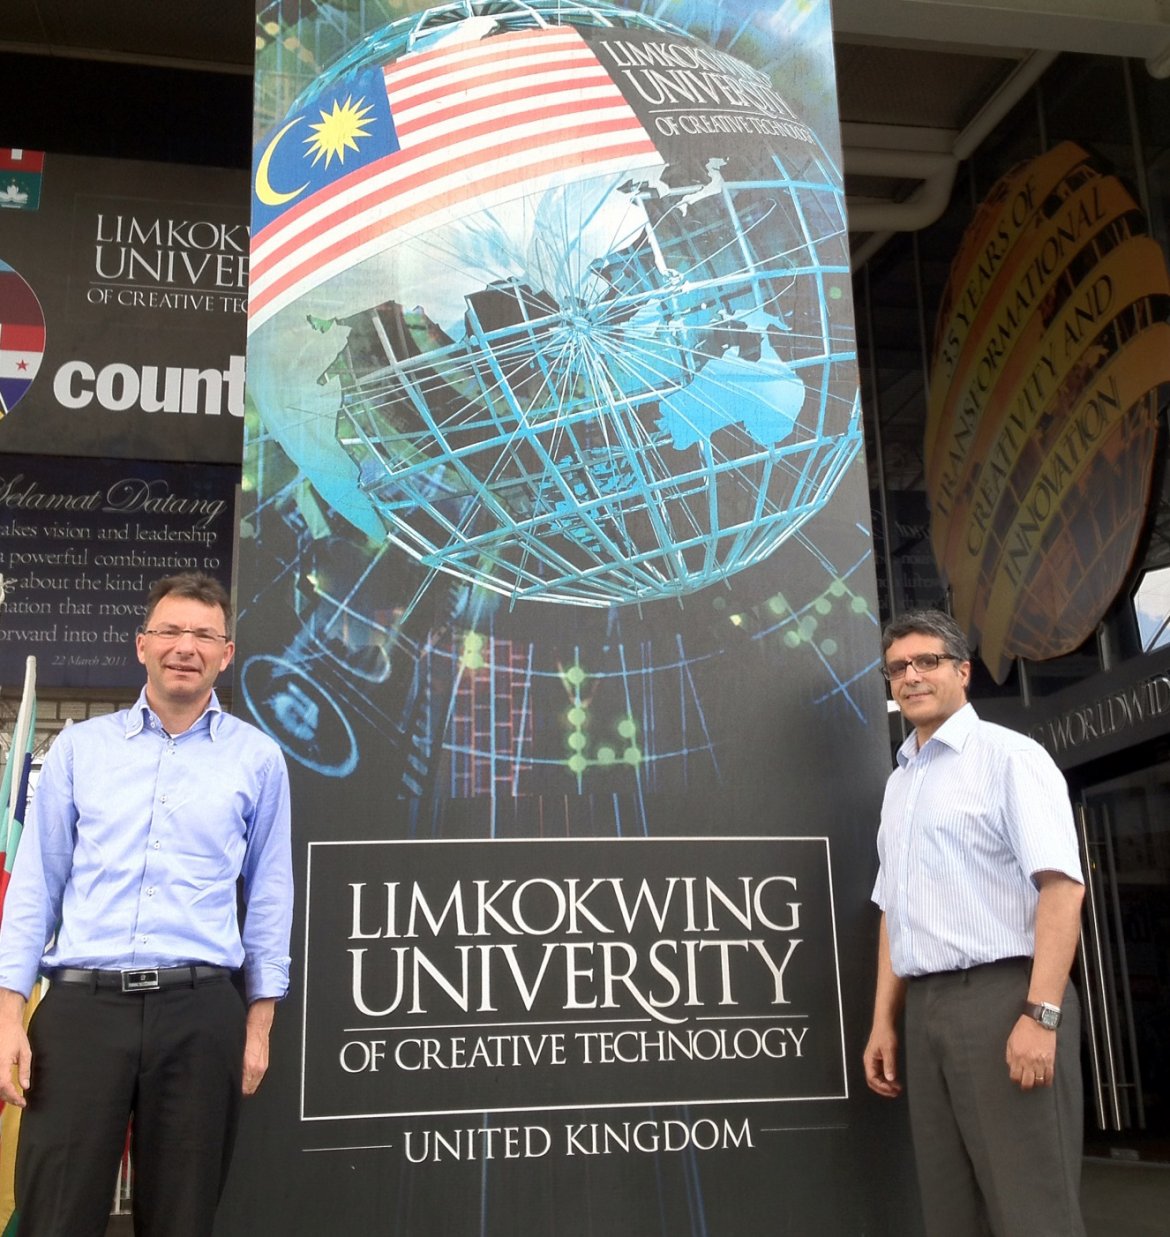 Zu Besuch bei der Limkokwing University in Malaysia: Prof. Madritsch (li) und Mag. Rafili (re)